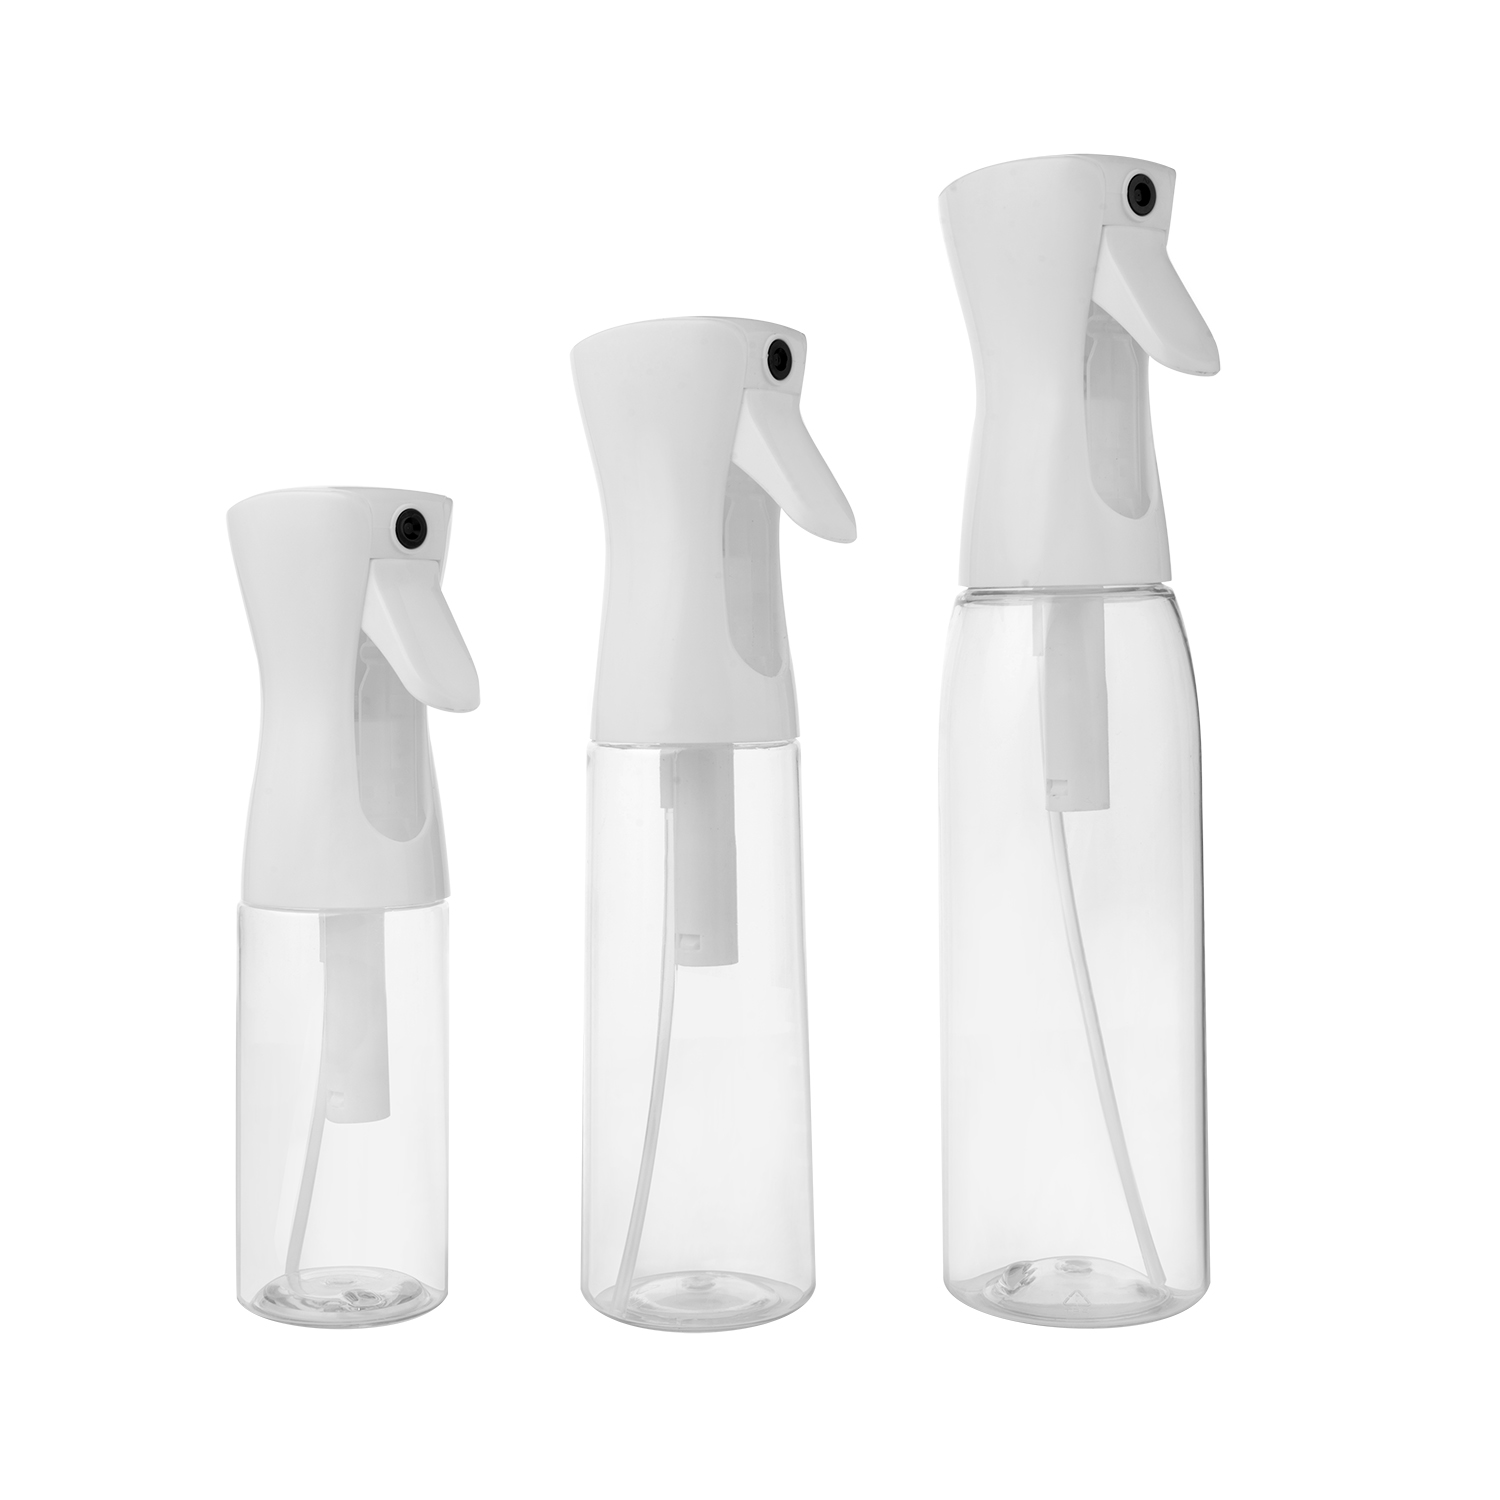 200ml 300ml 500ml Plastic Bottle PET Spray Bottle